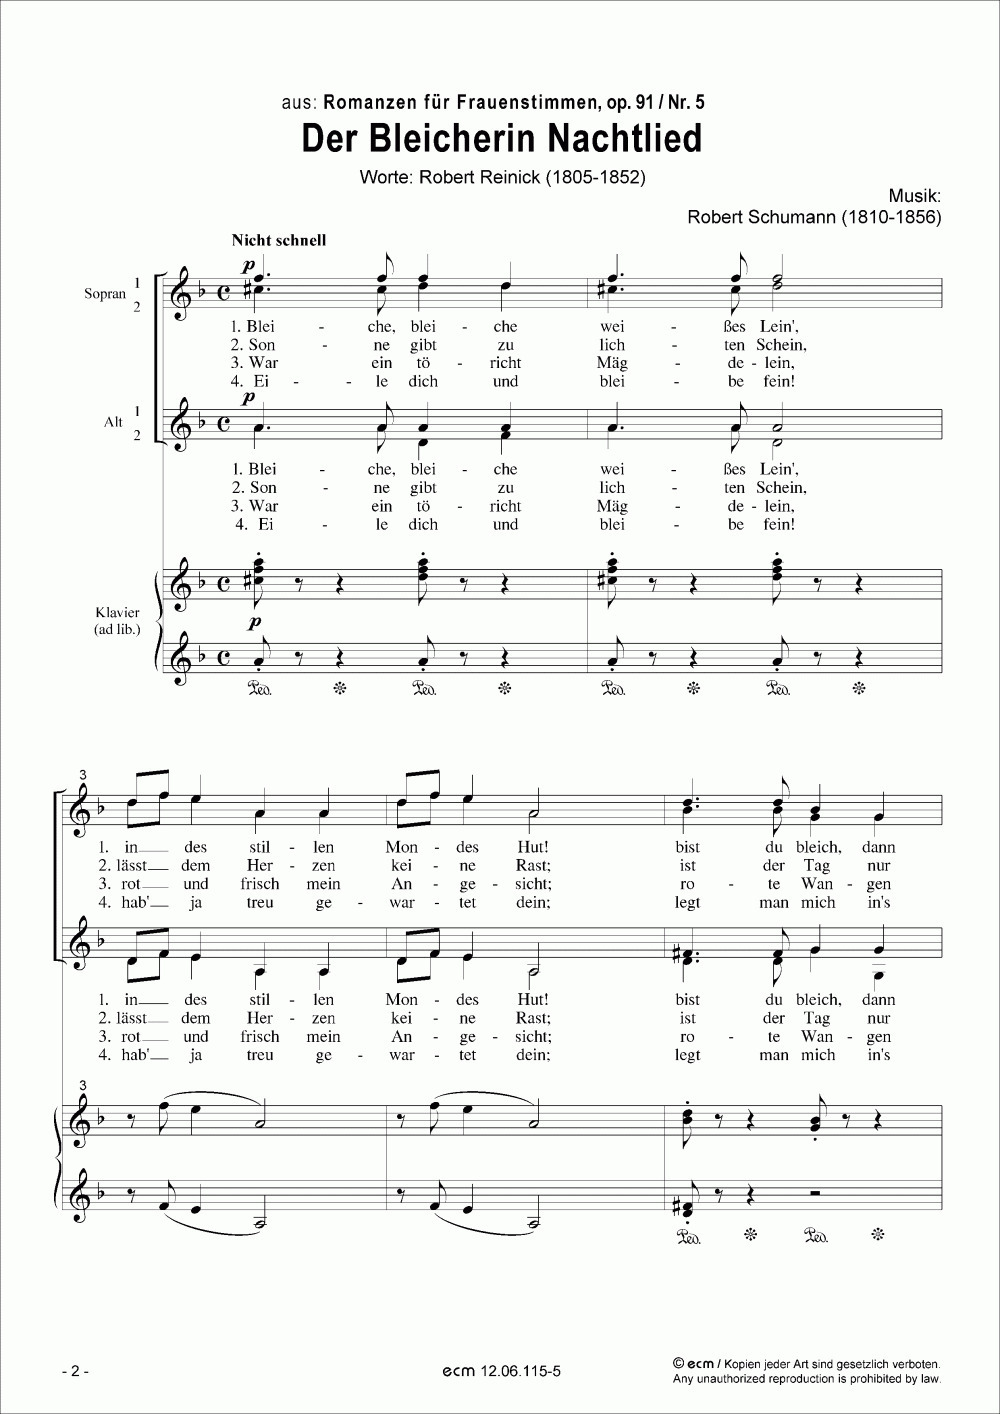 Der Bleicherin Nachtlied (op.91, Nr.5)